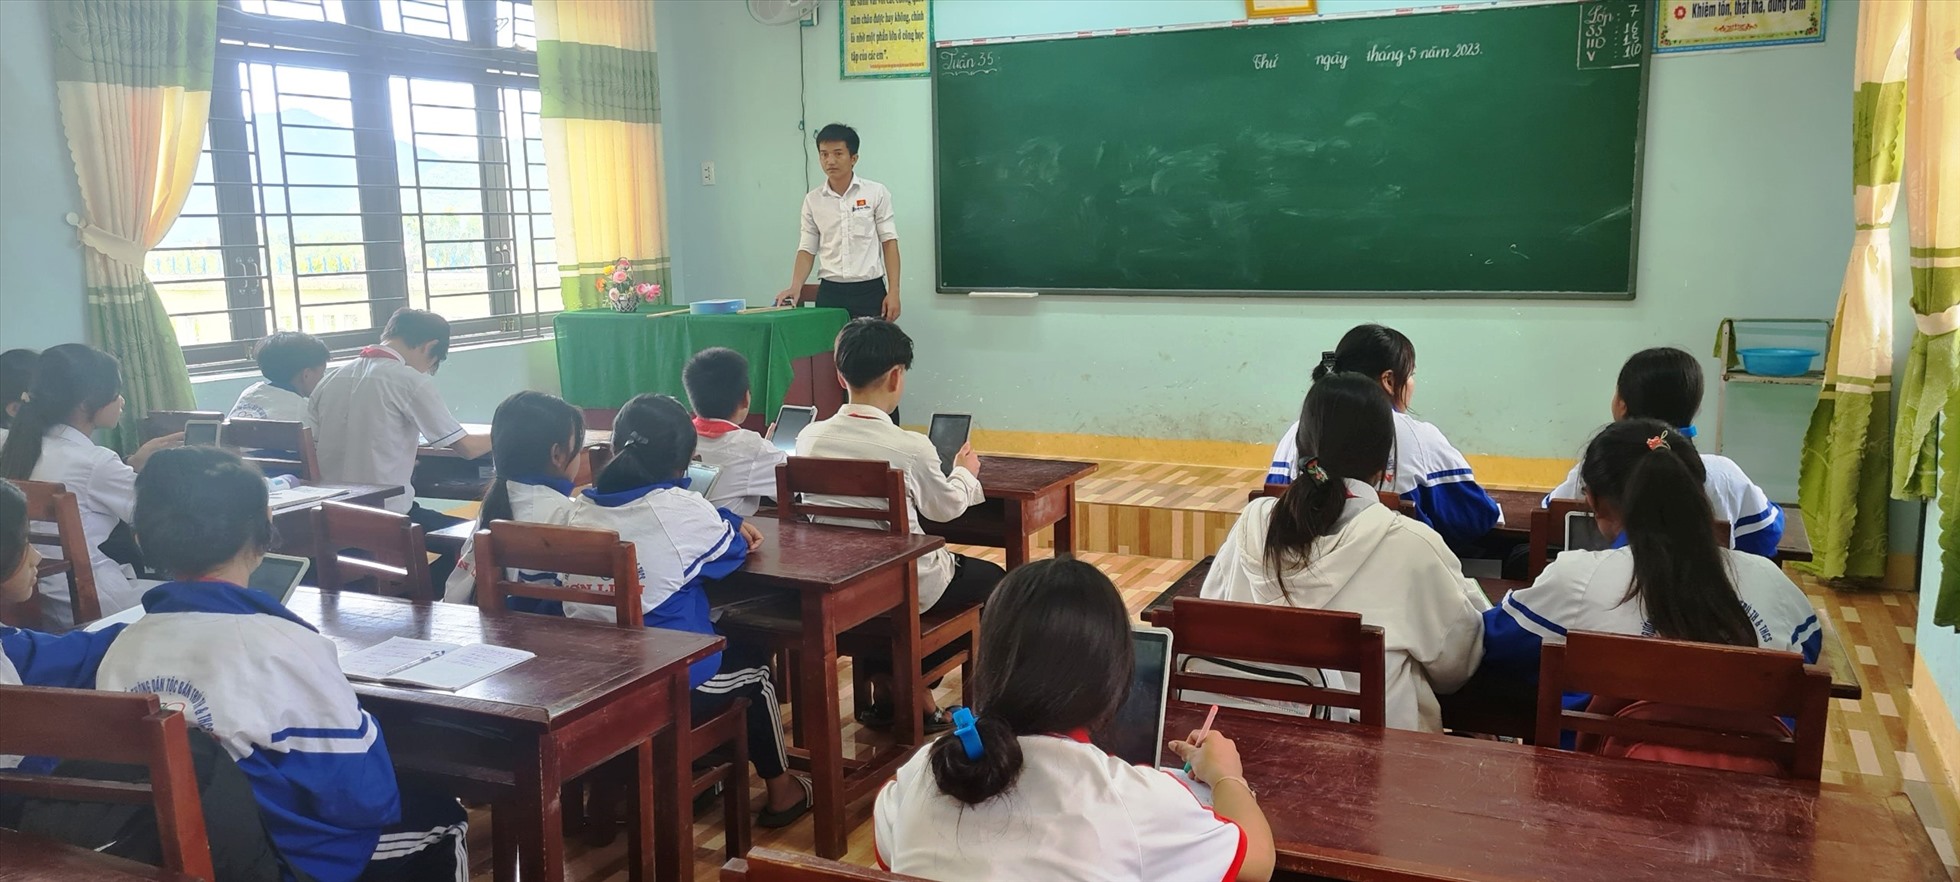 Giáo viên Trường Phổ thông dân tộc bán trú TH&THCS Sơn Liên, huyện Sơn Tây  nhắc nhở HS sử dụng máy tính bảng phục vụ trong học tập. Ảnh: Ngọc Viên